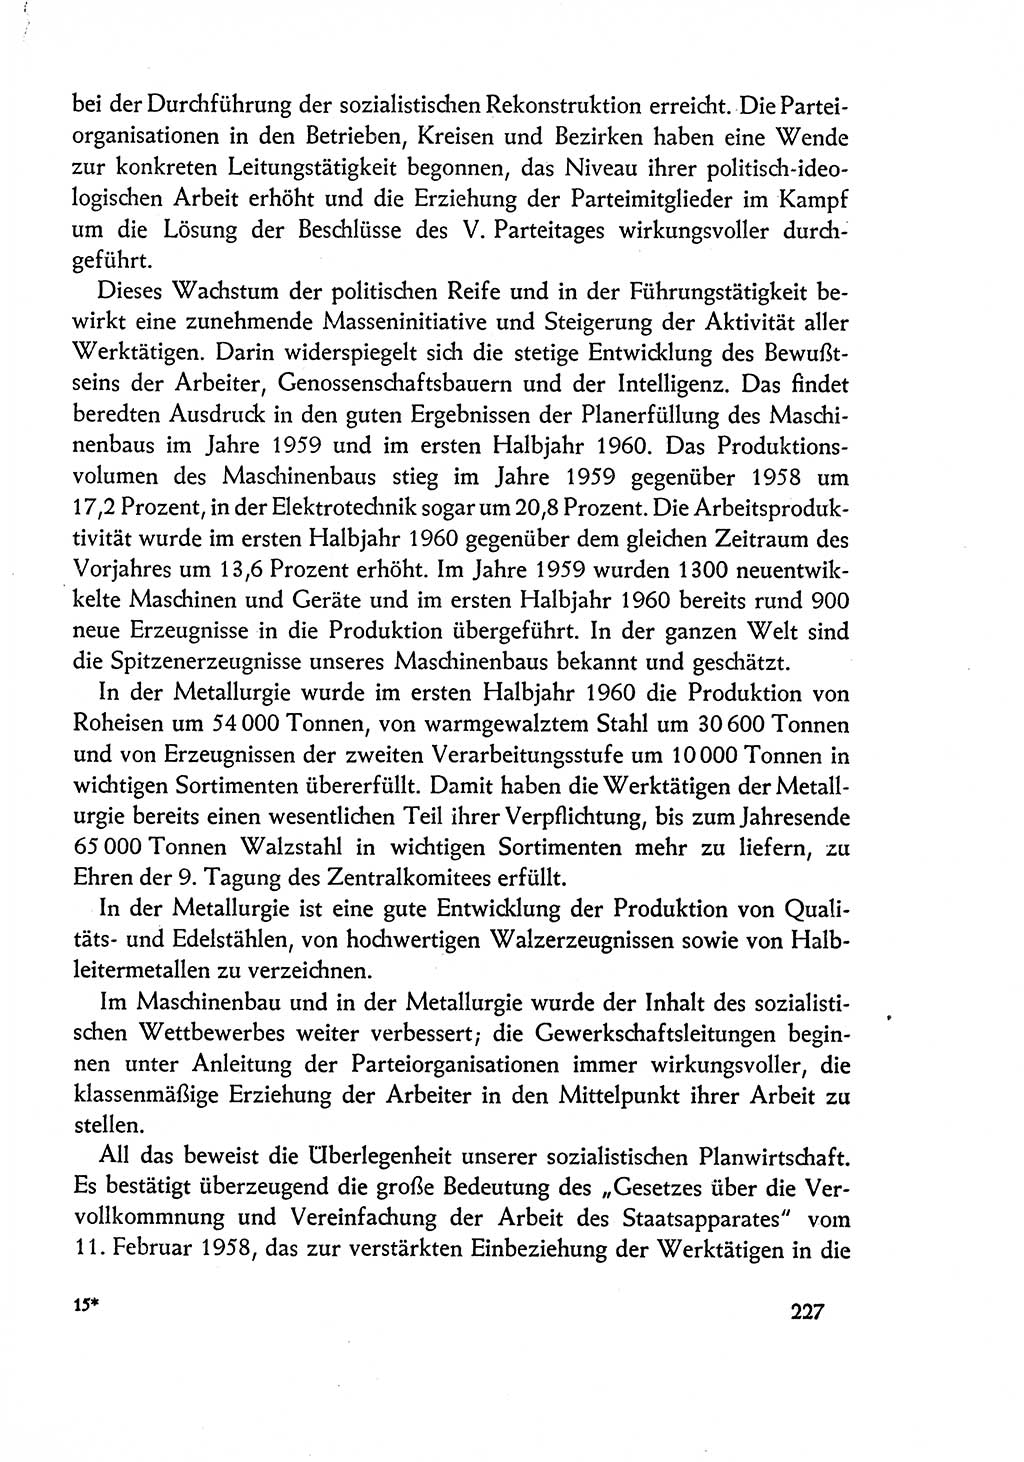 Dokumente der Sozialistischen Einheitspartei Deutschlands (SED) [Deutsche Demokratische Republik (DDR)] 1960-1961, Seite 227 (Dok. SED DDR 1960-1961, S. 227)